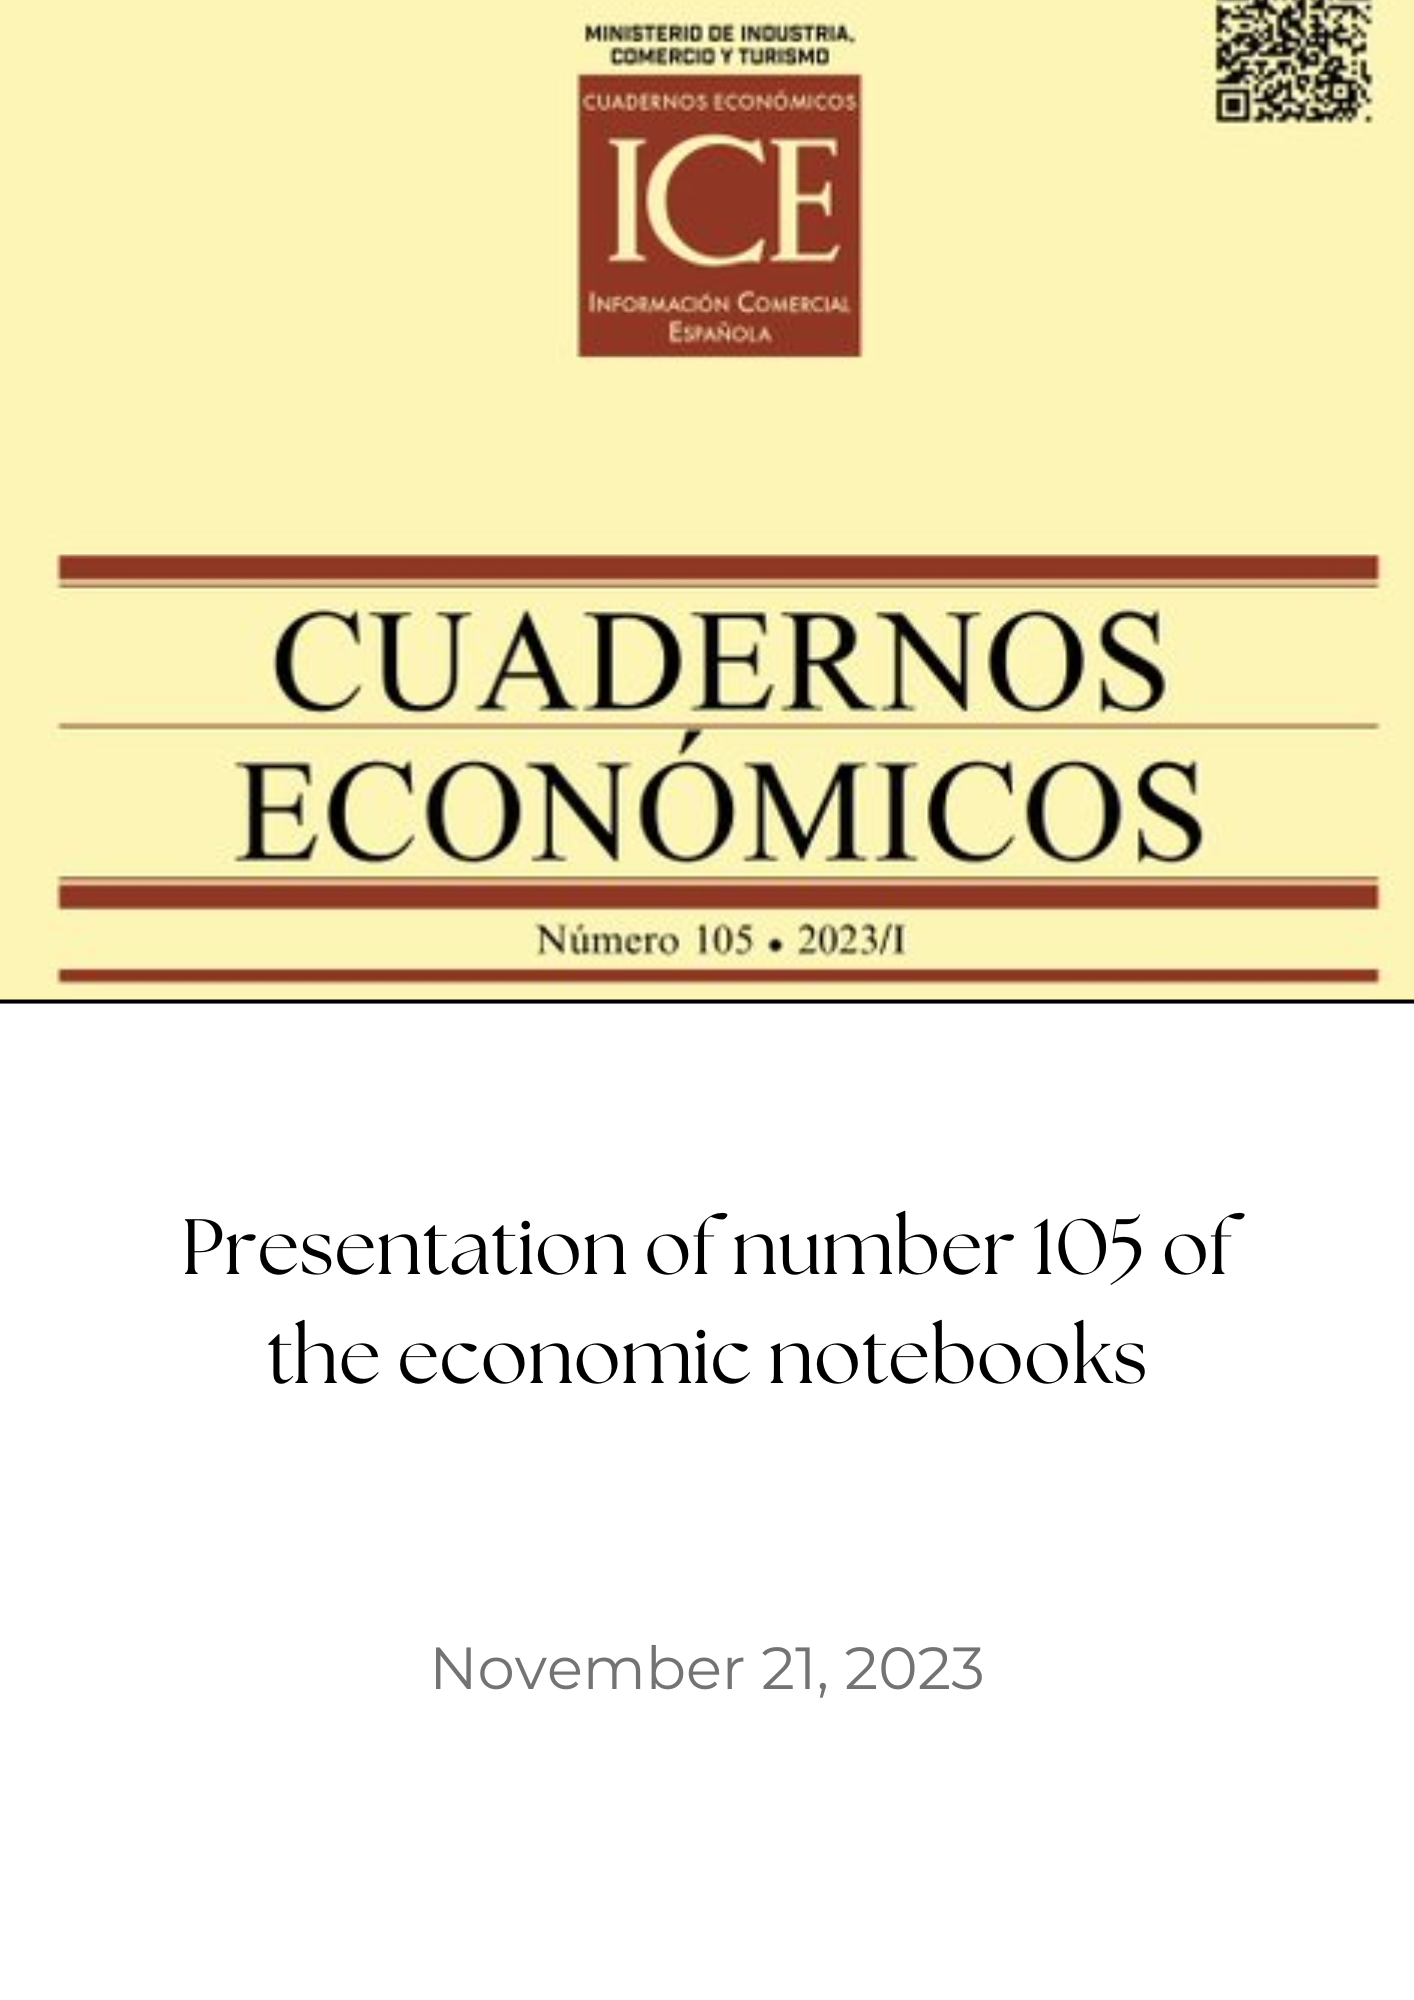 economic notebooks